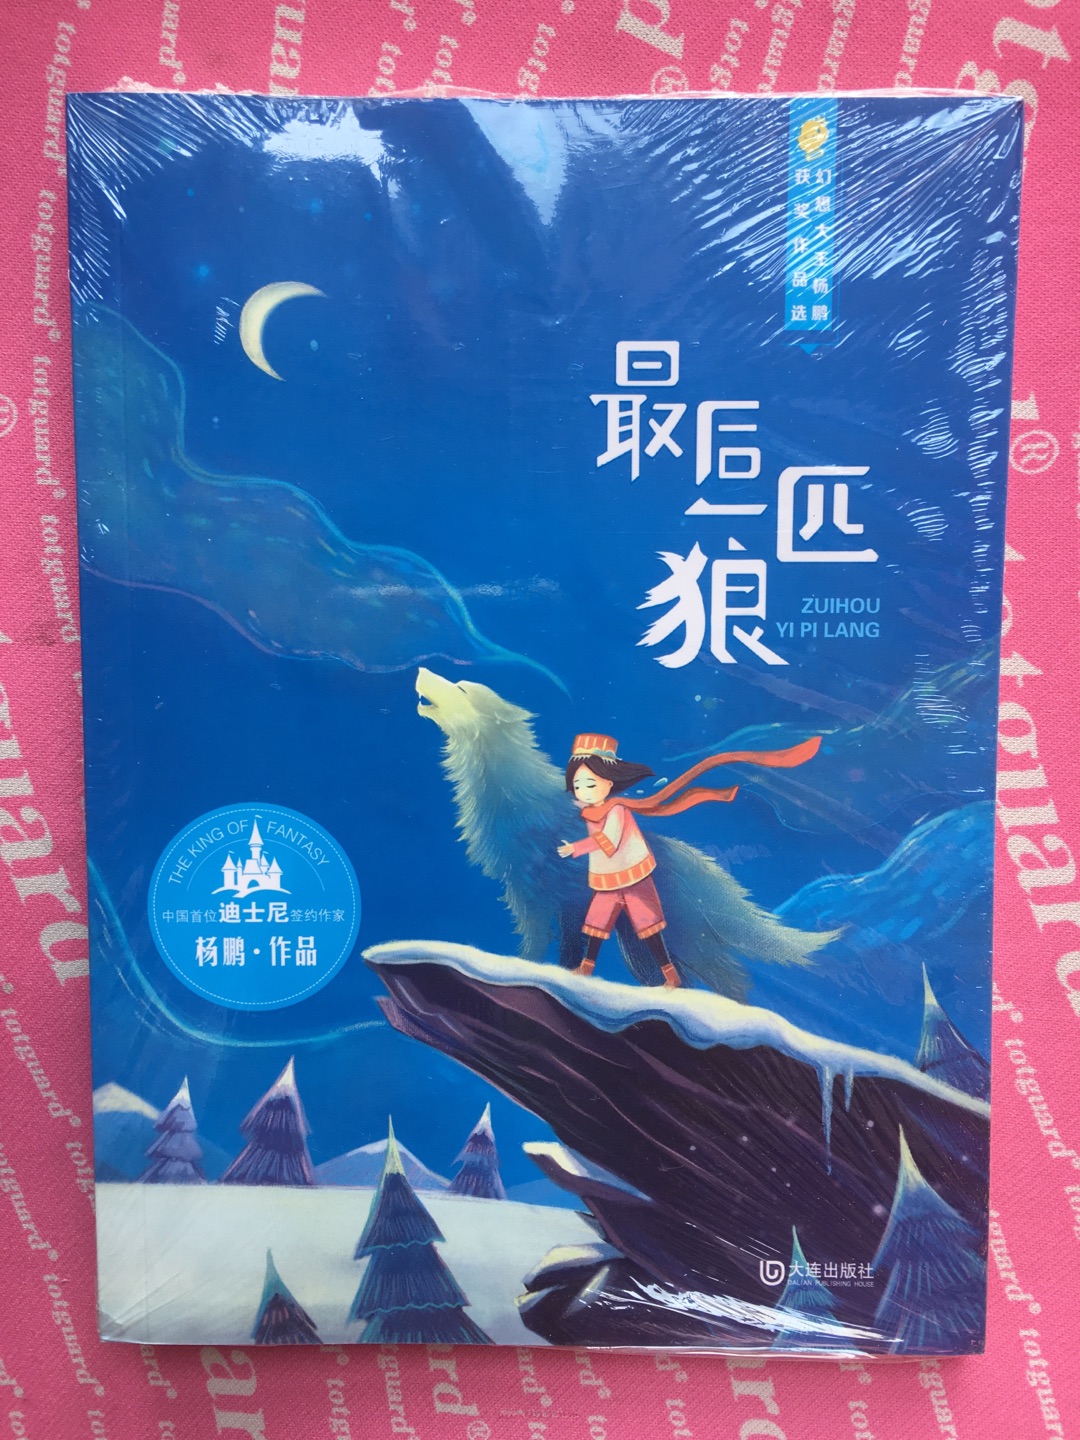 《最后一匹狼》是学校语文老师推荐在寒假期间世行课外阅读的书籍之一。书并不厚，看到介绍说作者是中国首位迪士尼签约的作家。希望故事精彩，孩子喜欢！